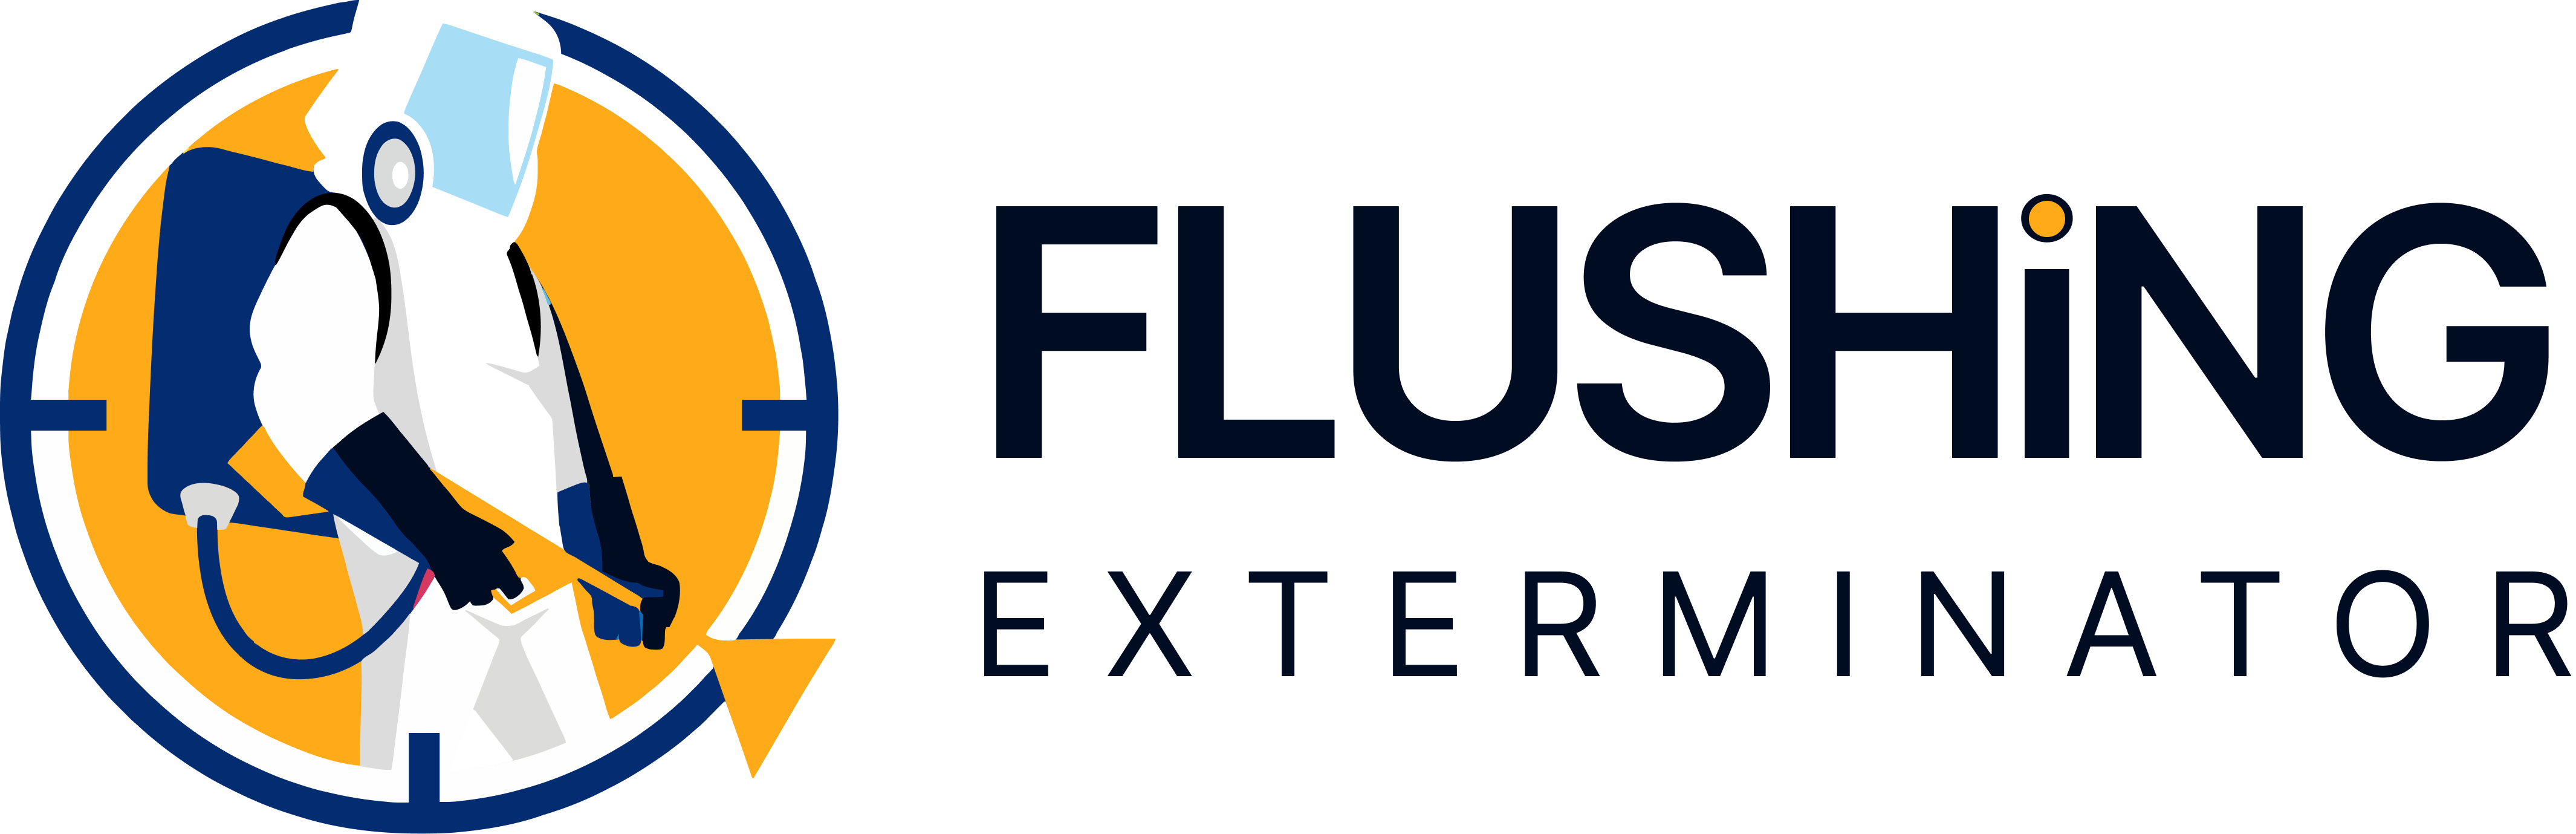 flushing logo